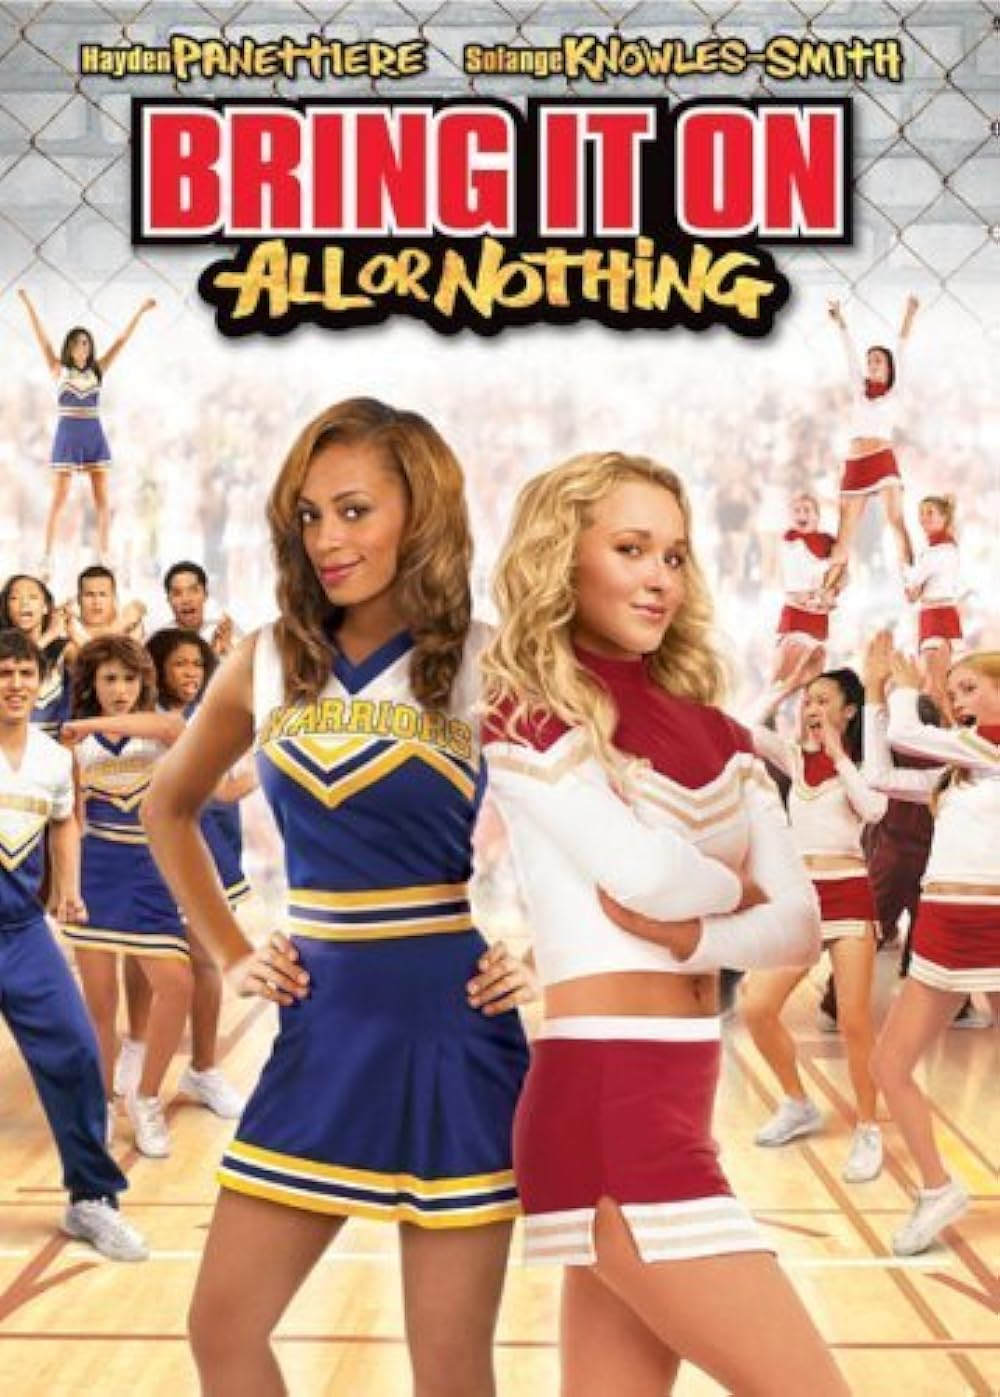 alix fuller recommends cheerleaders in da hood pic